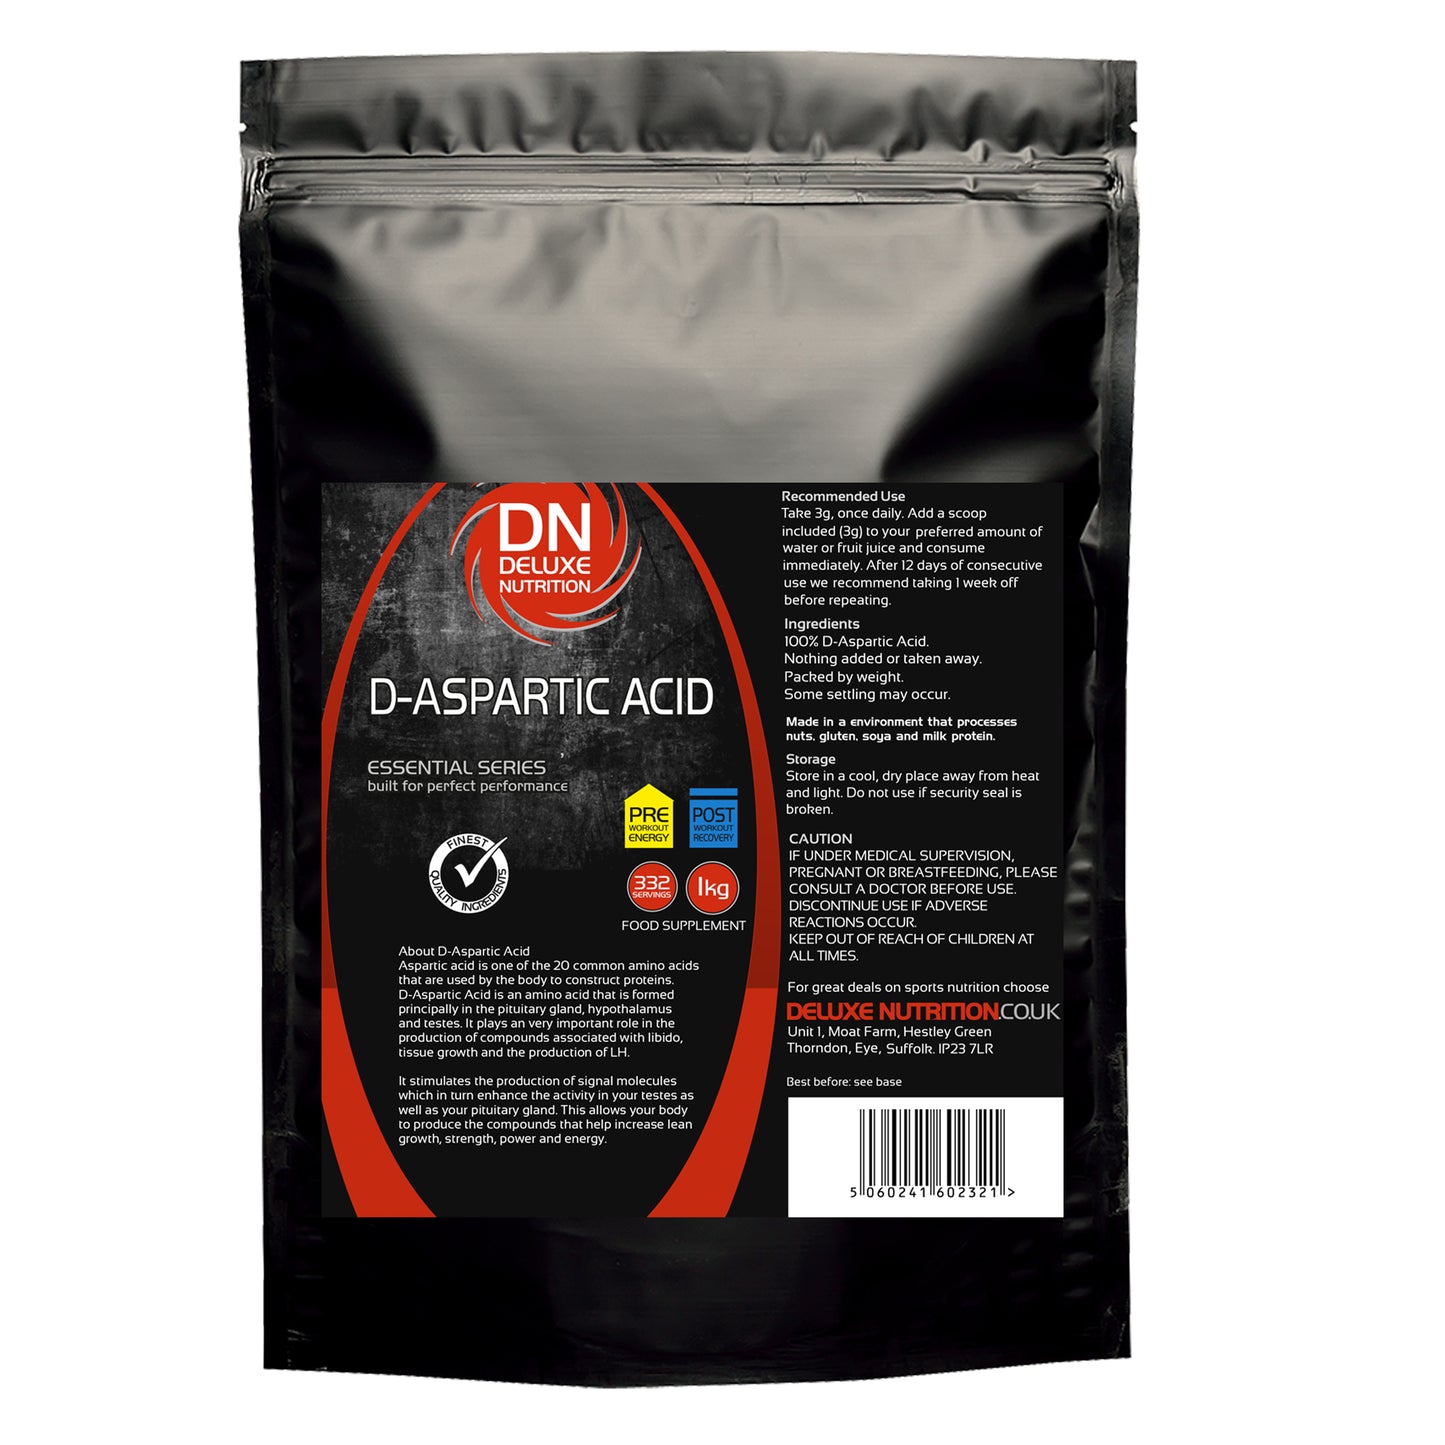 D-ASPARTIC ACID (DAA)